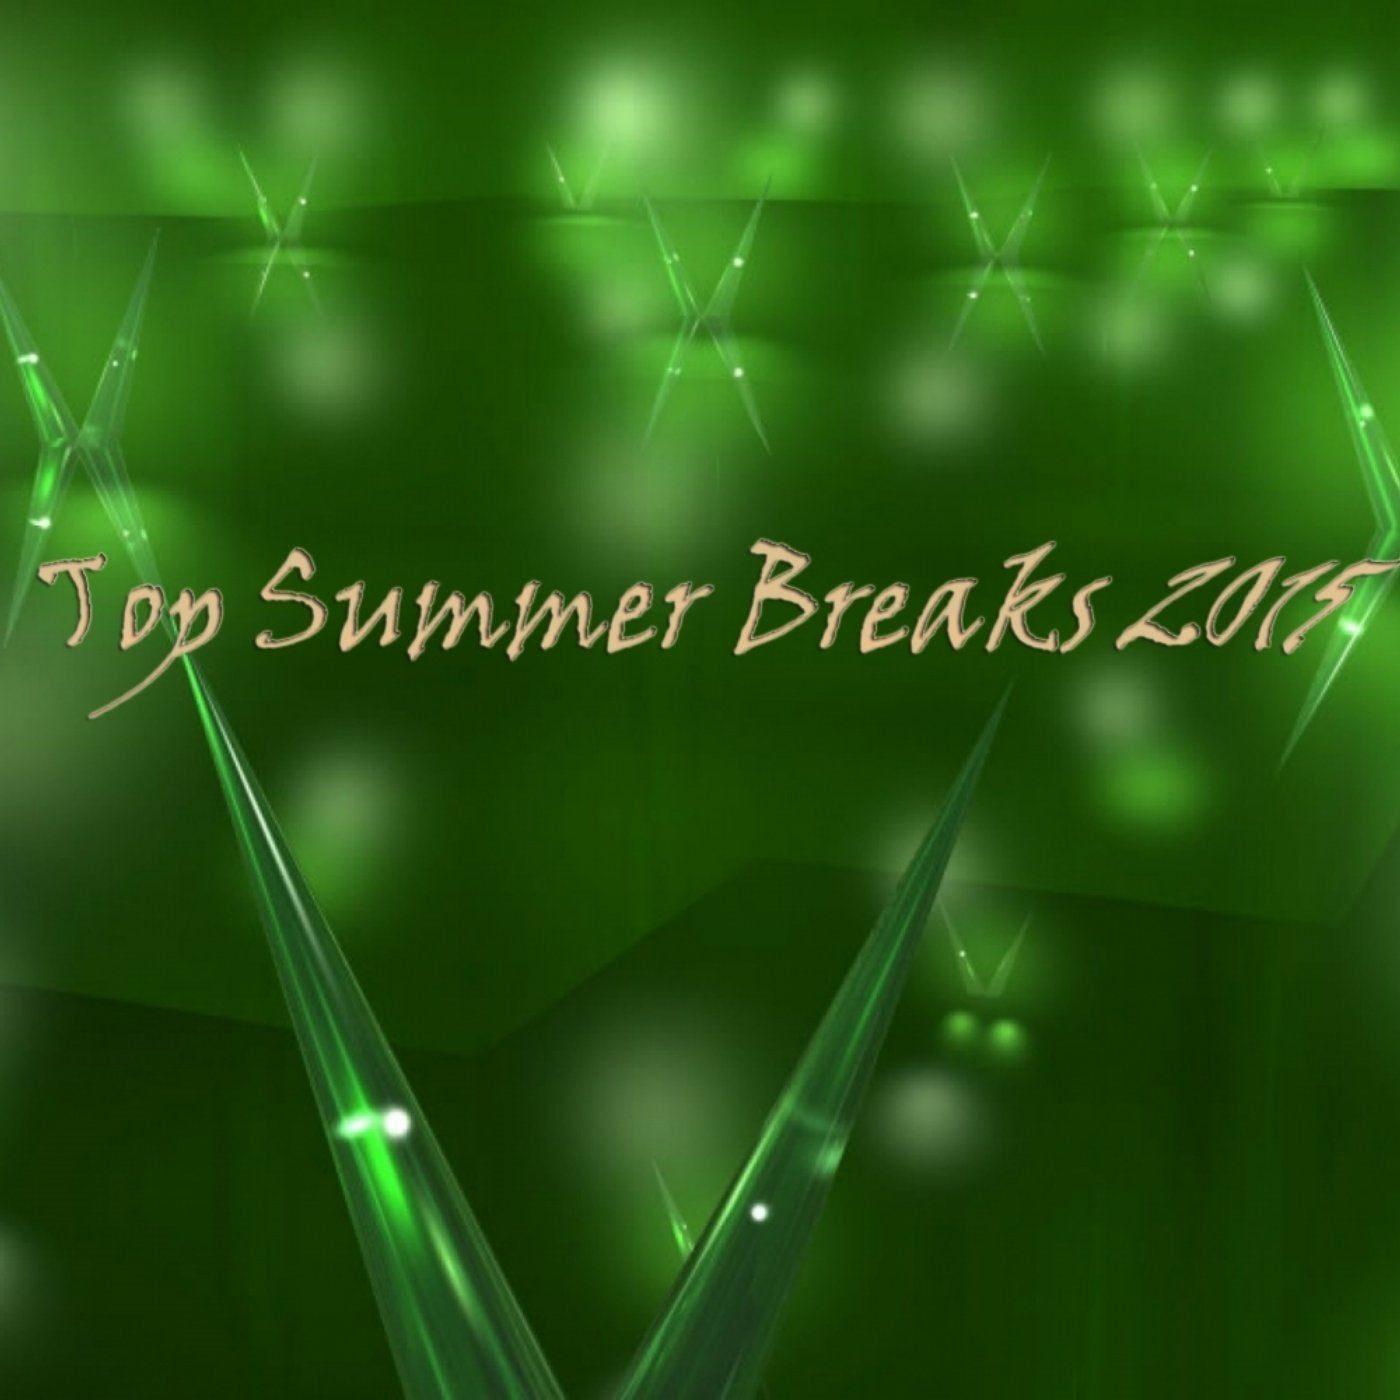 Top Summer Breaks 2015